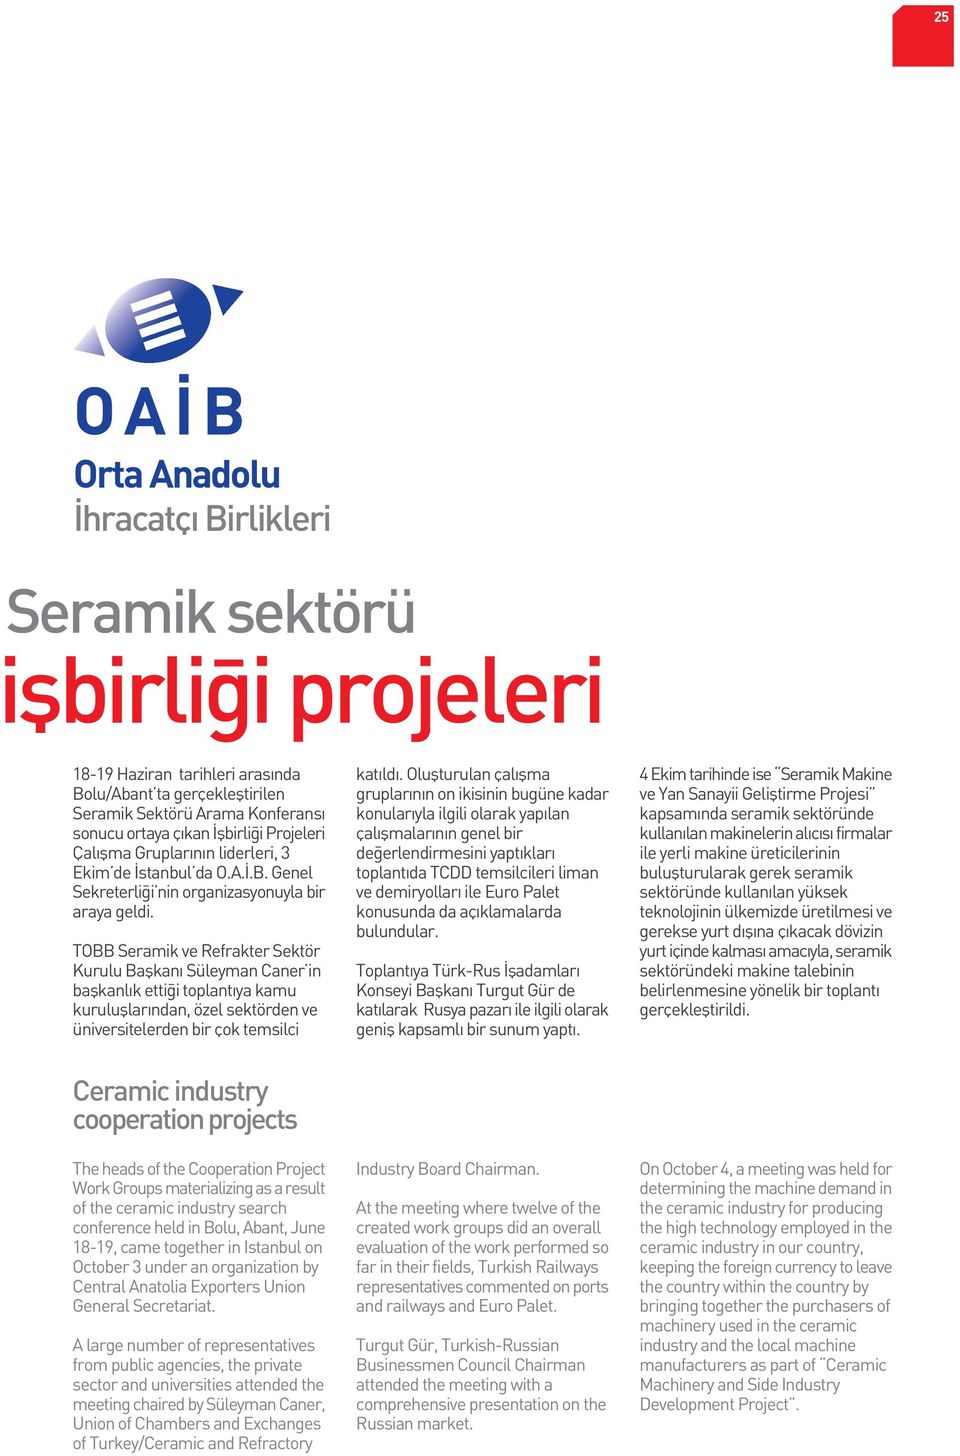 TOBB Seramik ve Refrakter Sektör Kurulu Baflkan Süleyman Caner in baflkanl k etti i toplant ya kamu kurulufllar ndan, özel sektörden ve üniversitelerden bir çok temsilci kat ld.